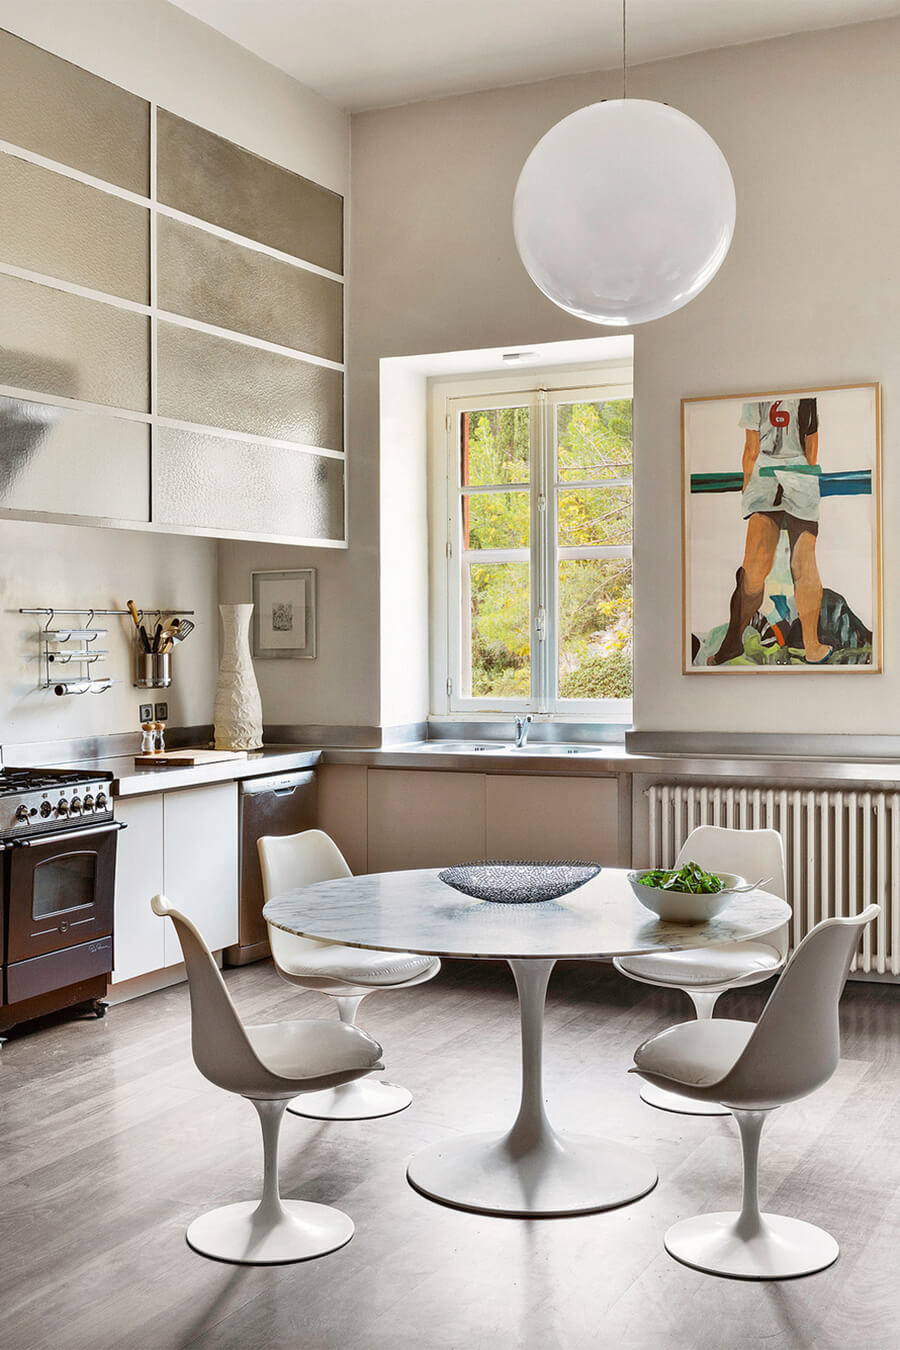 Cocina abierta con comedor de mesa redonda y sillas blancas con formas curvas. Los muebles de cocina, el suelo y las paredes son de colores neutros.